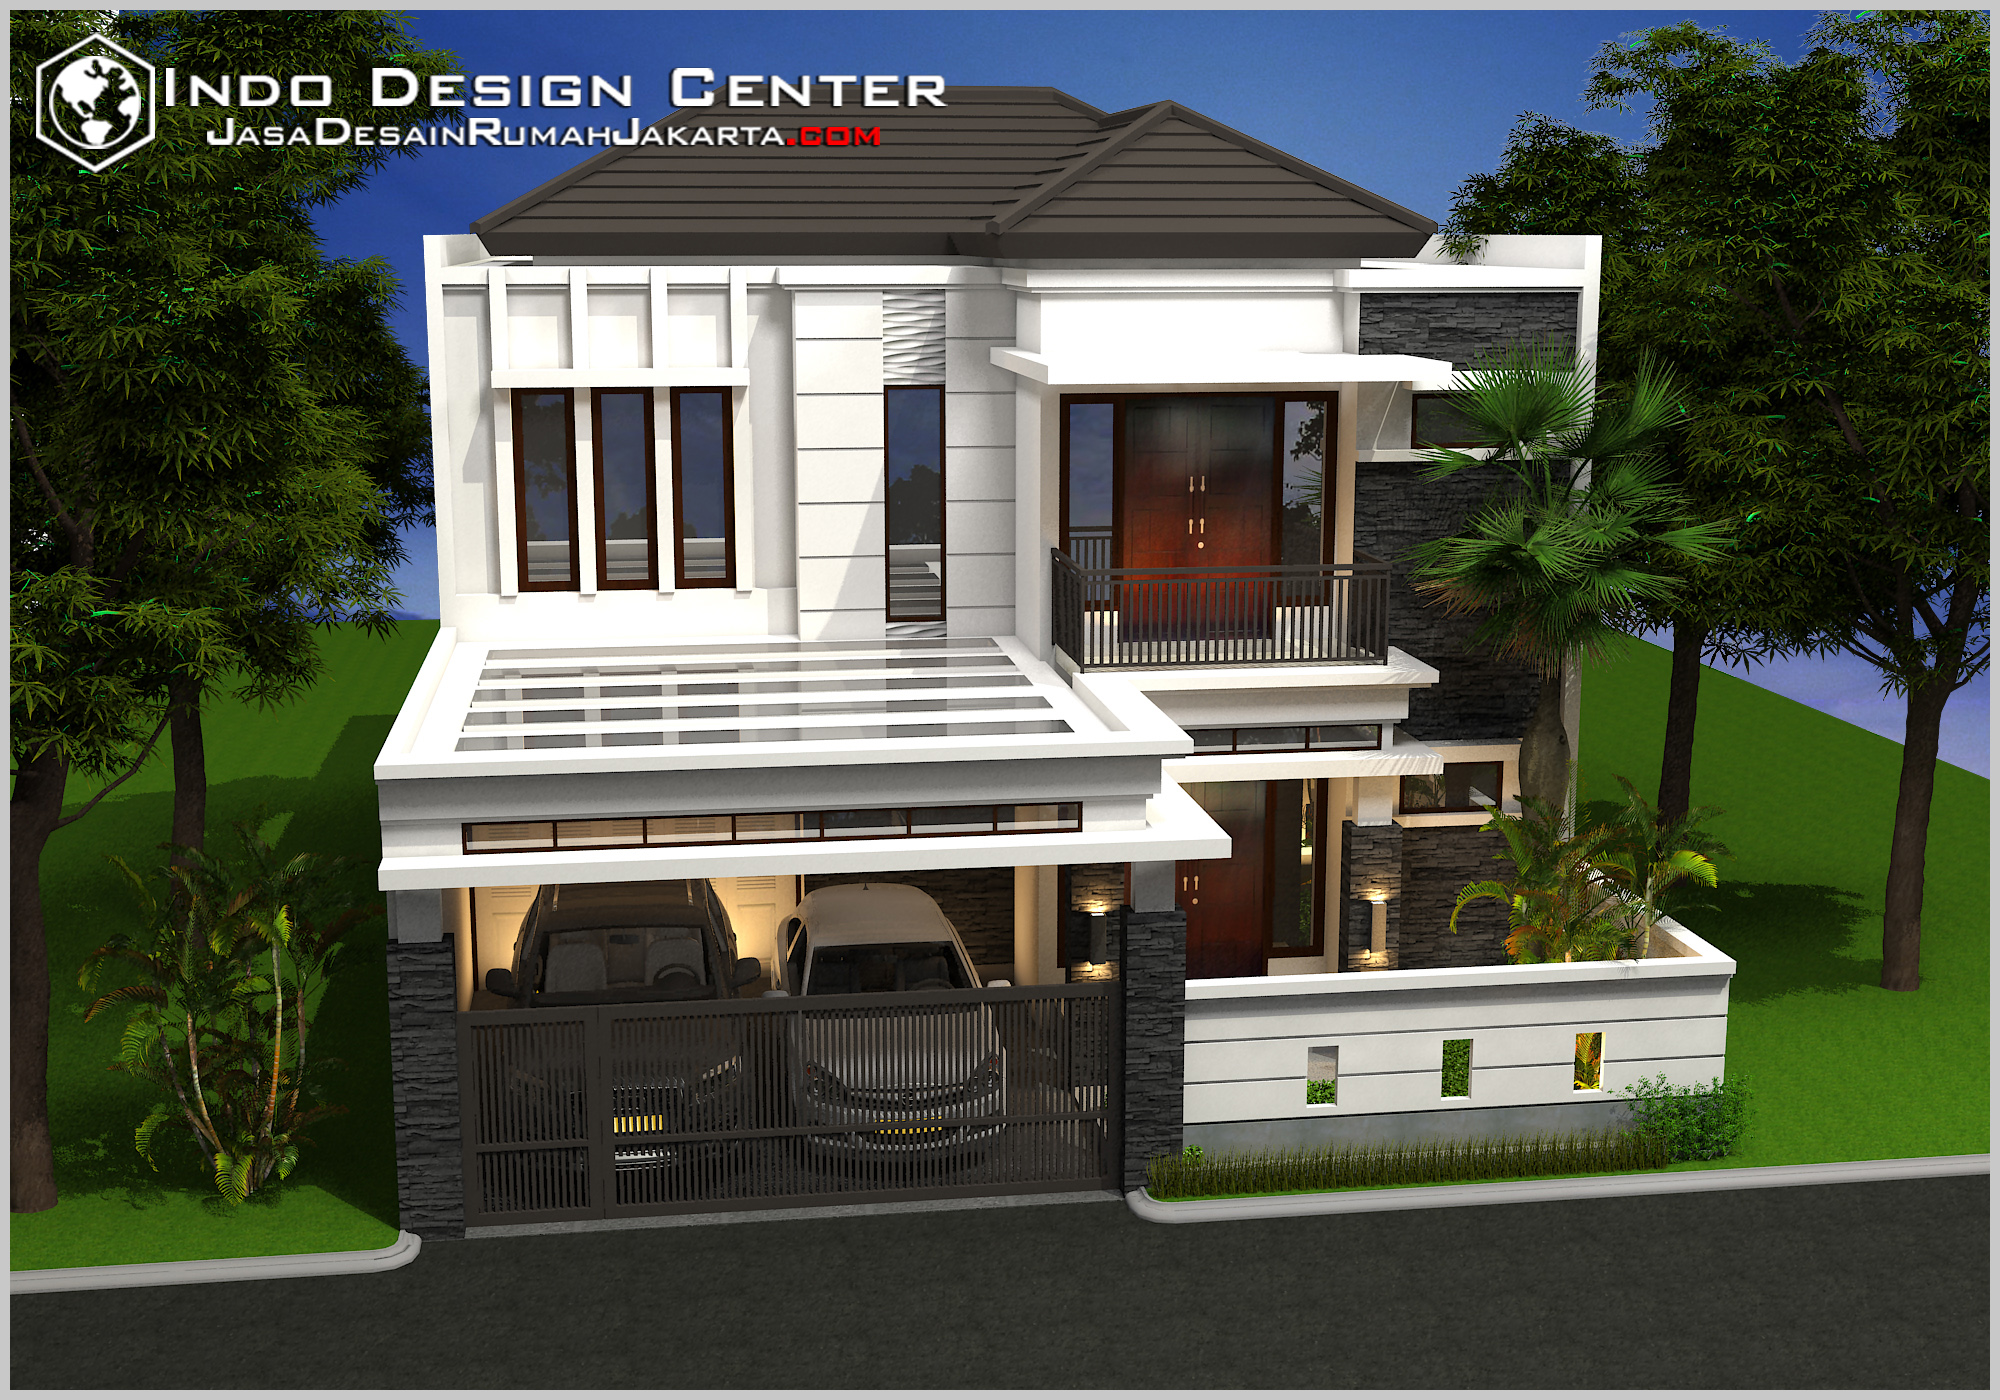 Gambar Jasa Desain Rumah Jakarta Pusat - Gambarrrrrrr